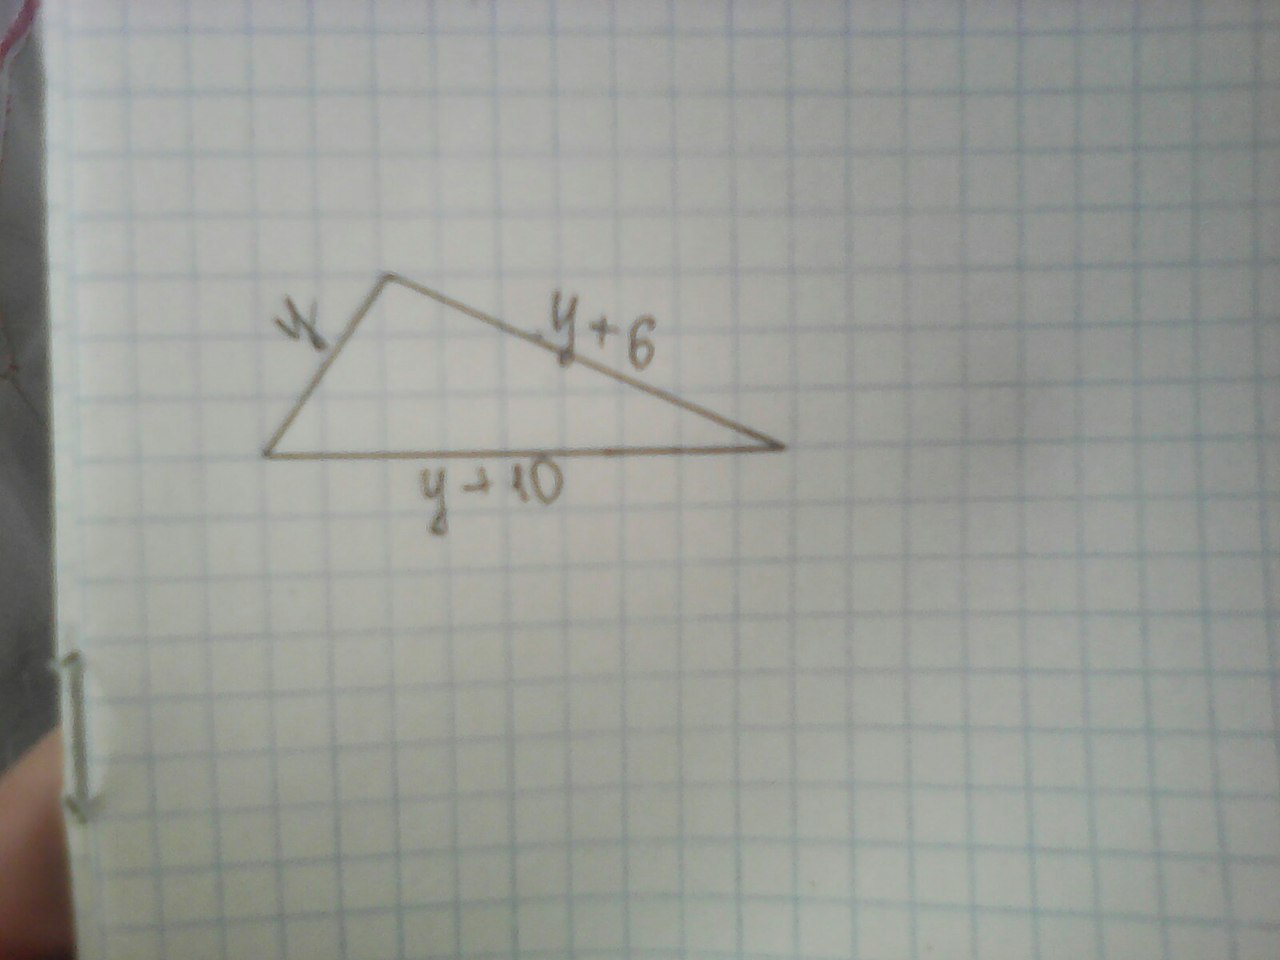 Найди периметр треугольника 1 1 6. Найдите периметр треугольника KTR 1 клетка 1 см. Составь формулу периметра треугольника учи.ру. Алиса как нарисовать треугольник со сторонами 2 см 3 см 4 см.